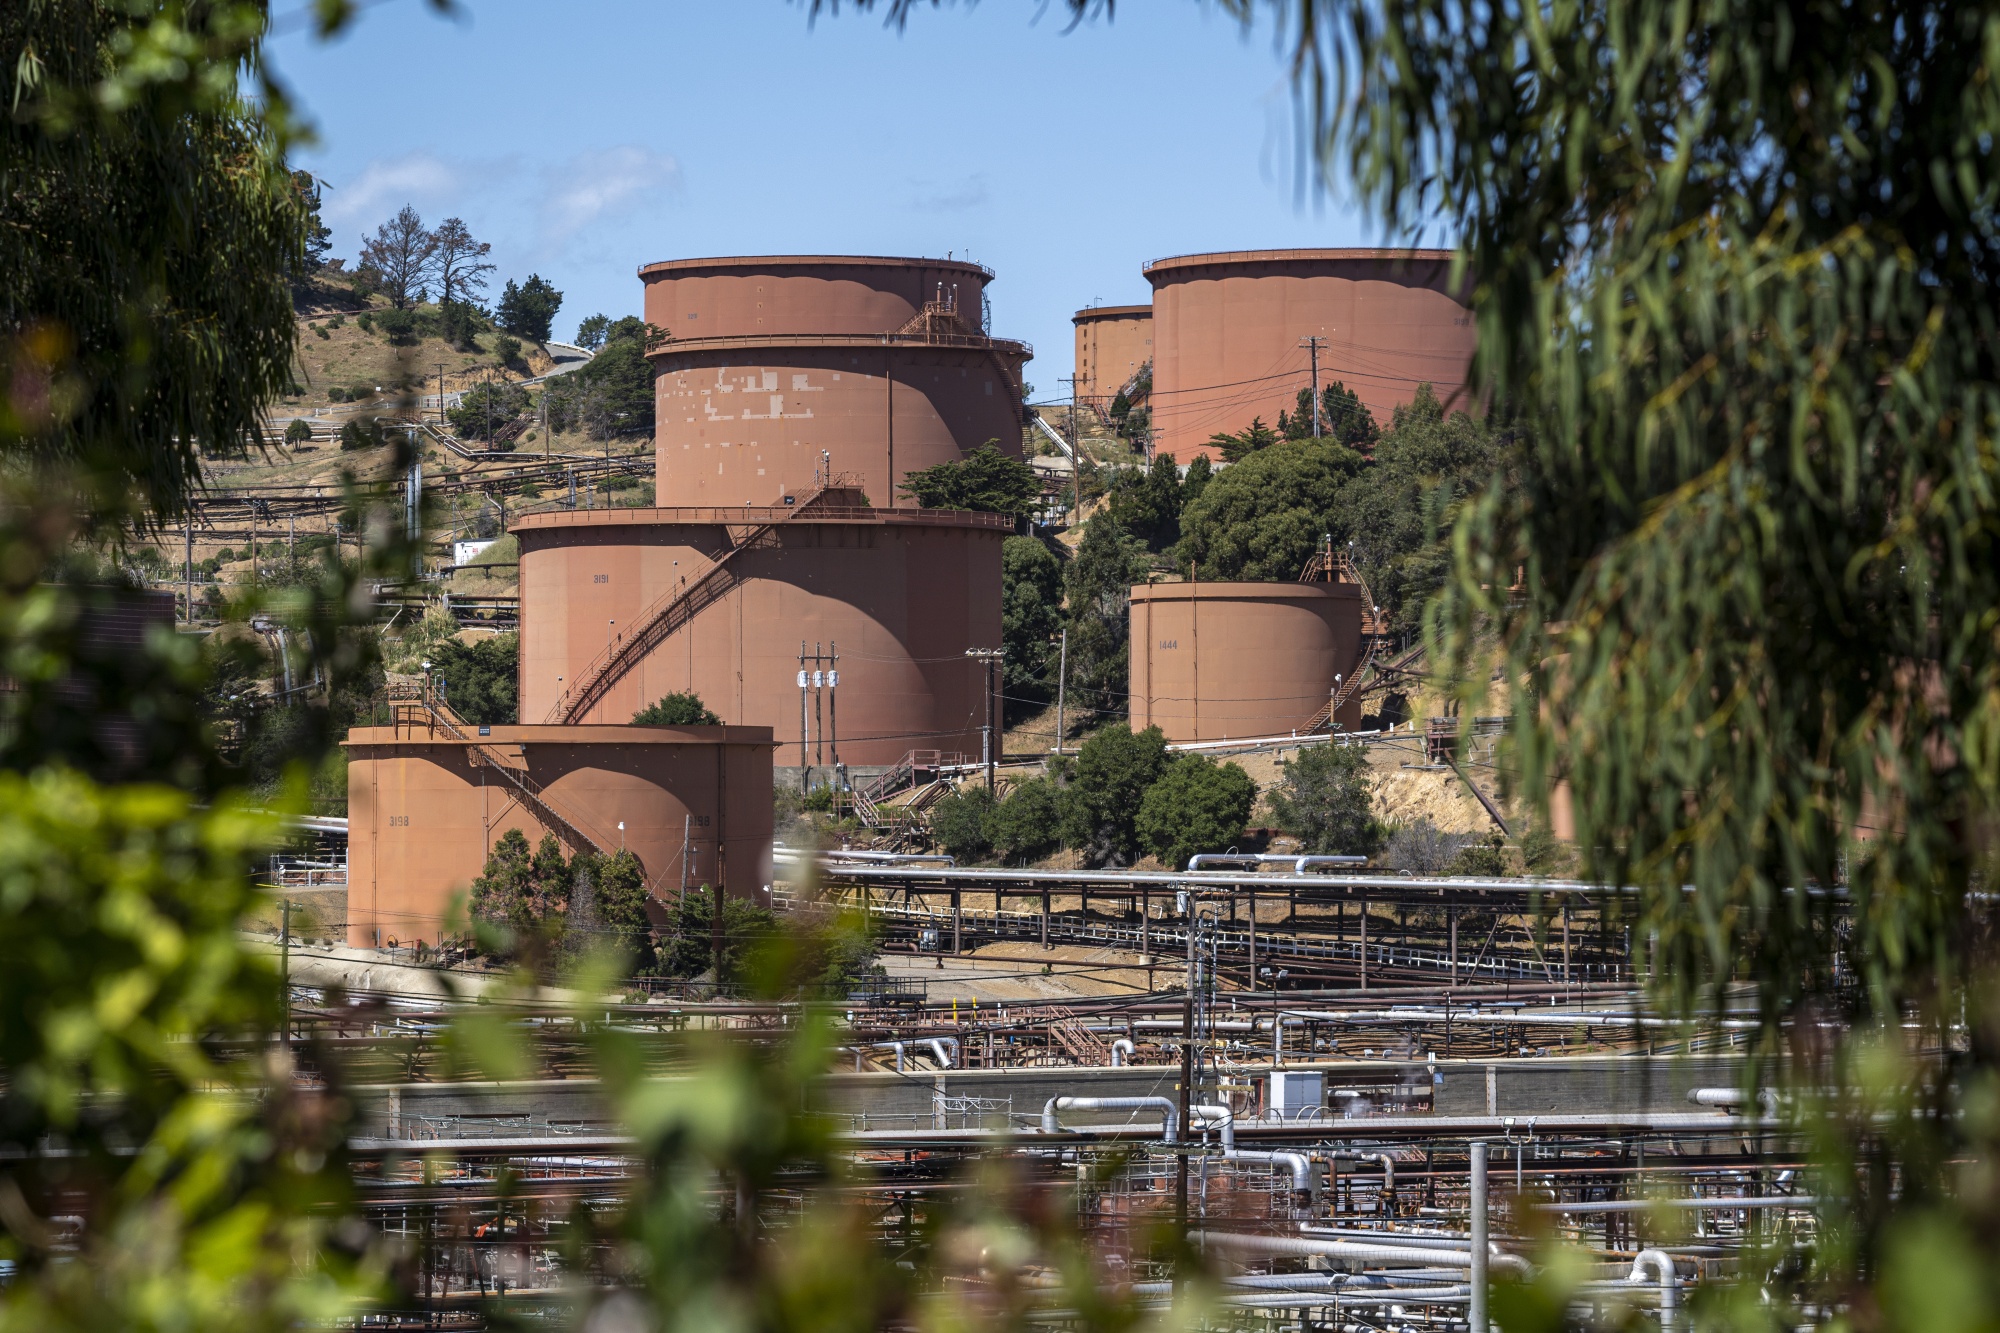 Storage tanks at the Chevron refinery in Richmond, California.